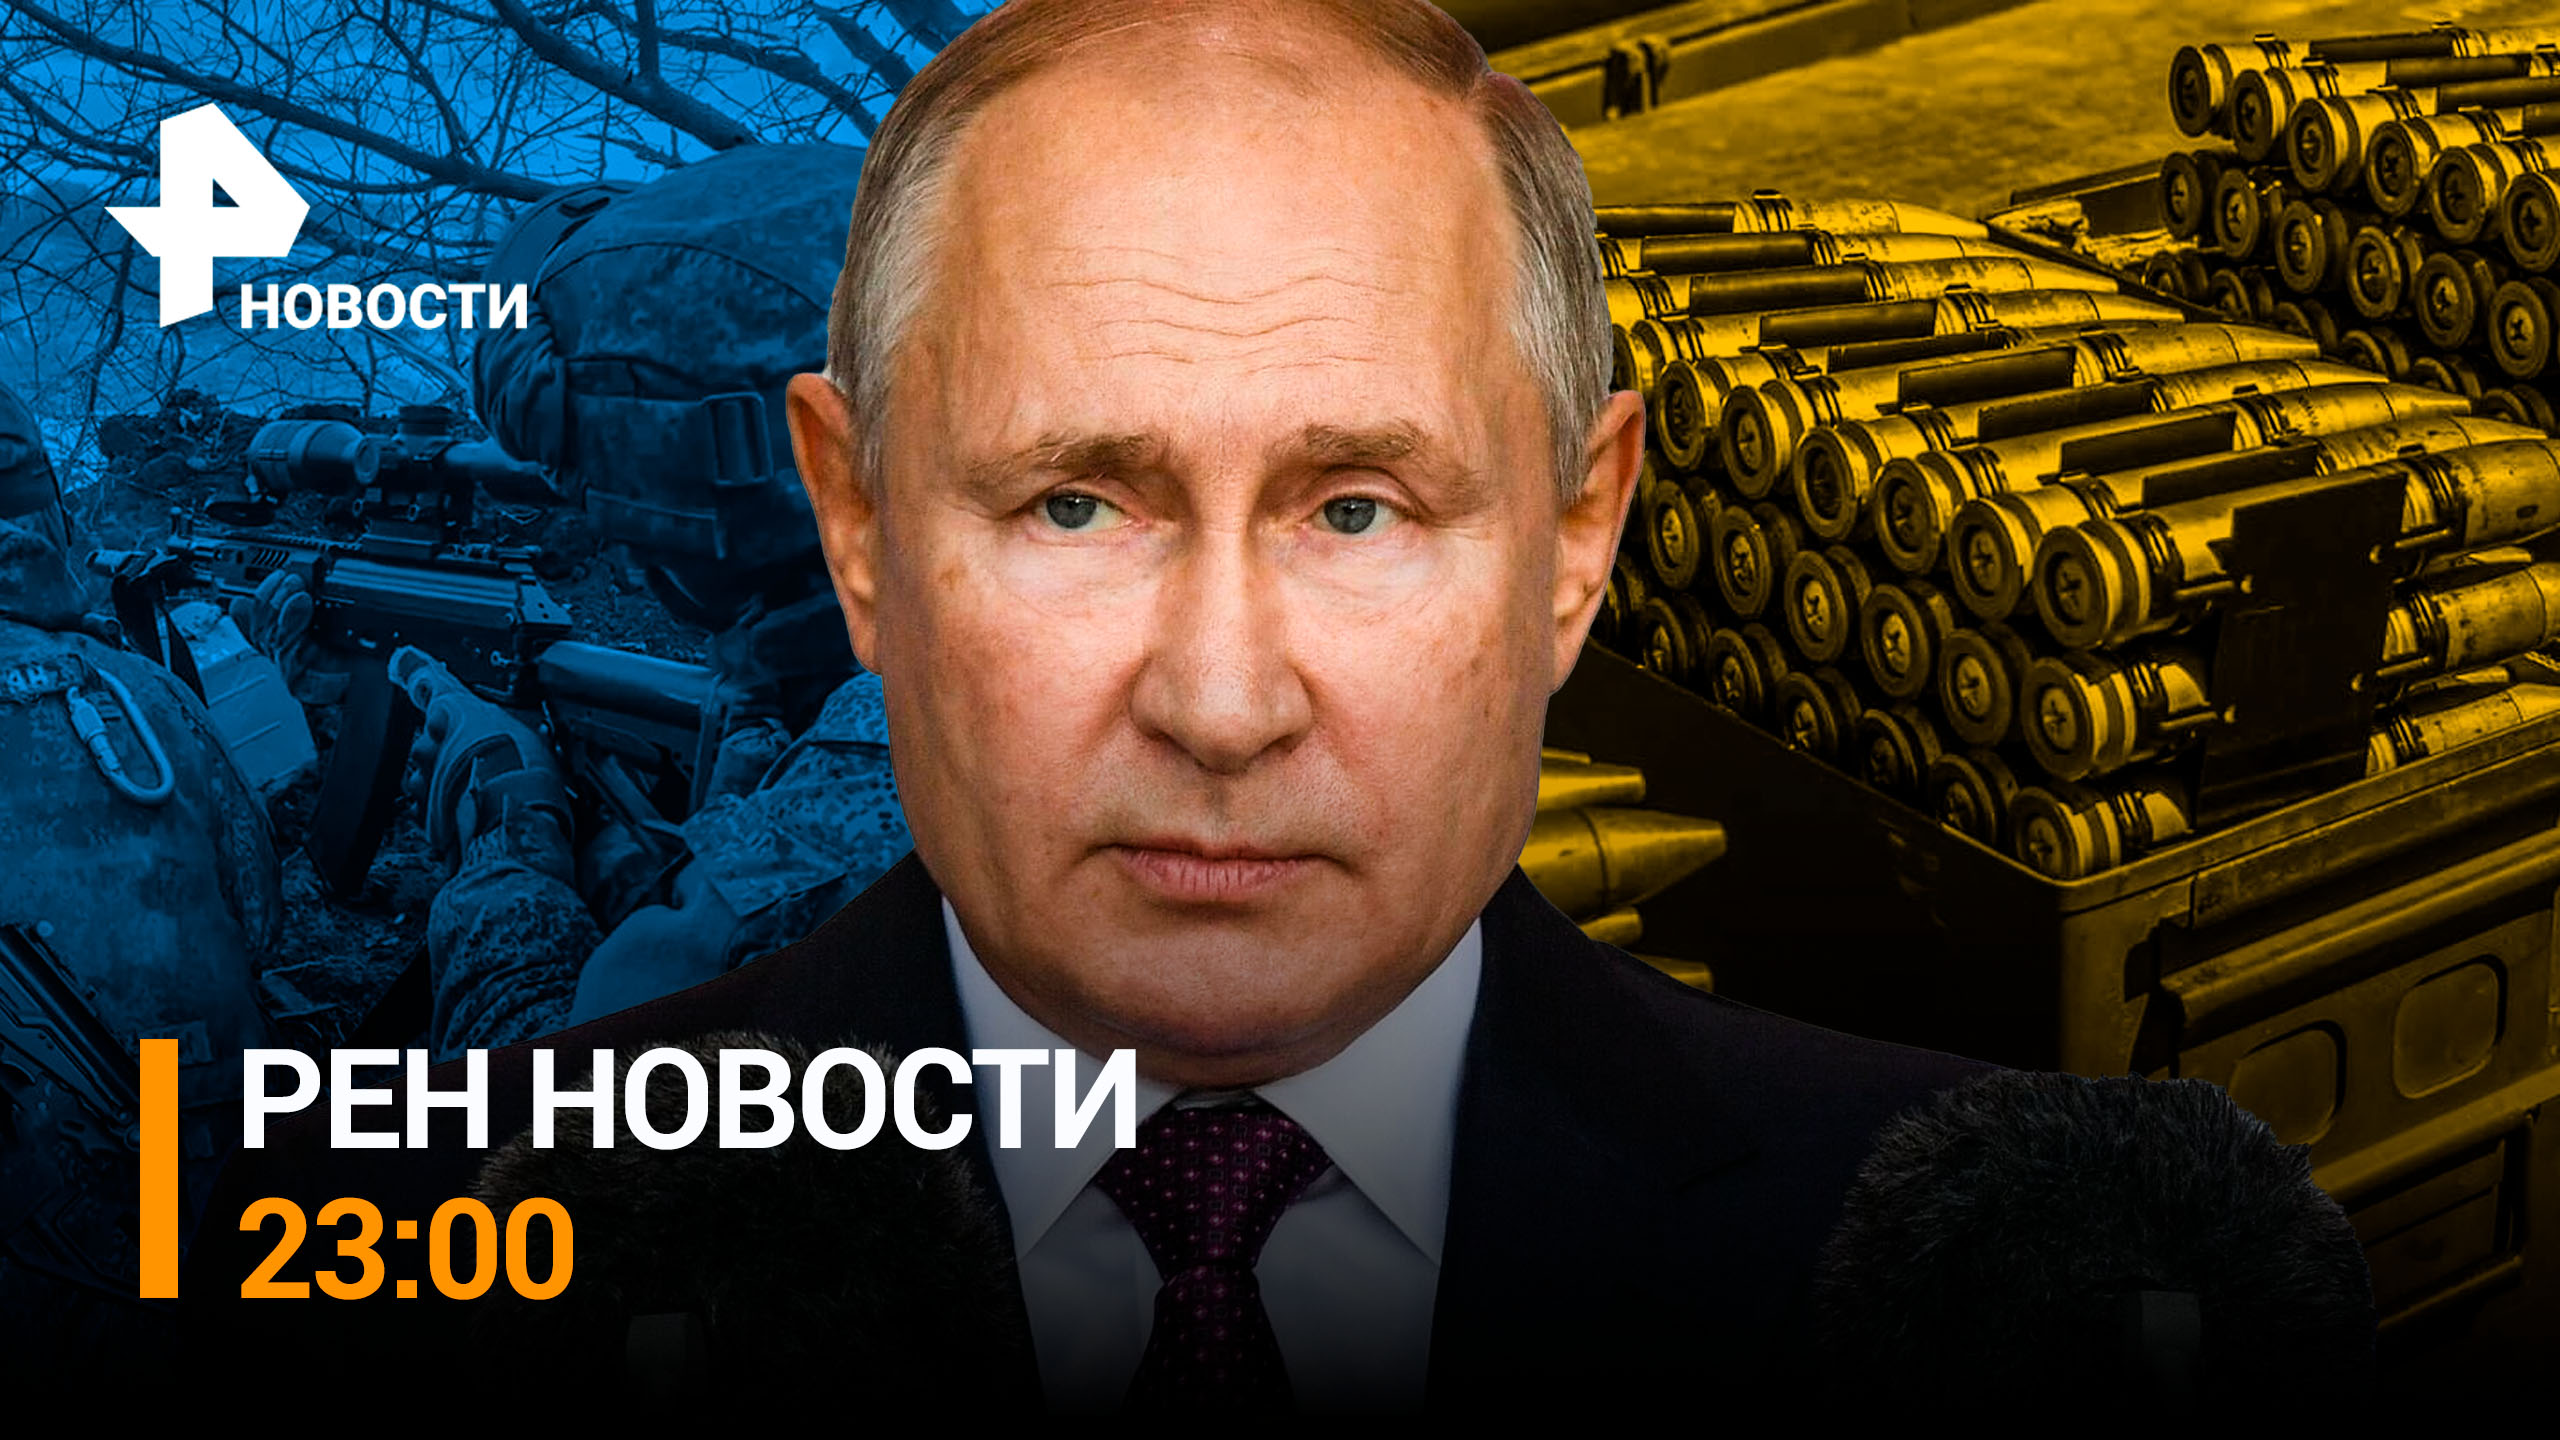 Американские СМИ назвали перебором отправку Киеву снарядов с обедненным ураном /РЕН НОВОСТИ от 23.03